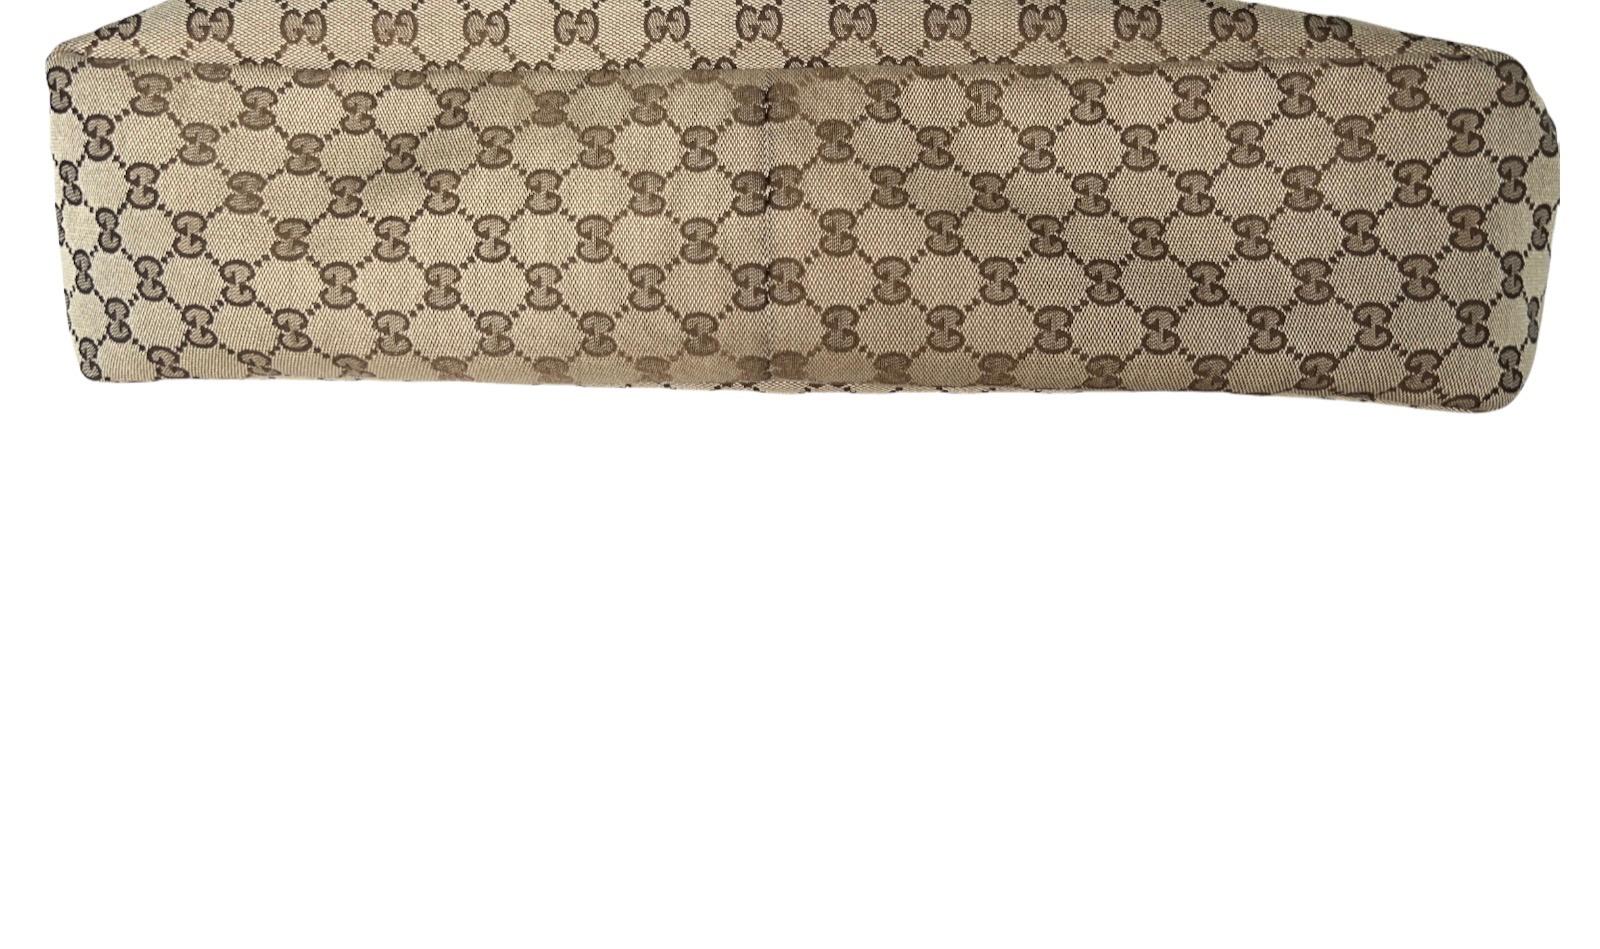 UNWORN Gucci GG Monogram Canvas XL Hobo Bag Satchel with Horsebit Detail 3